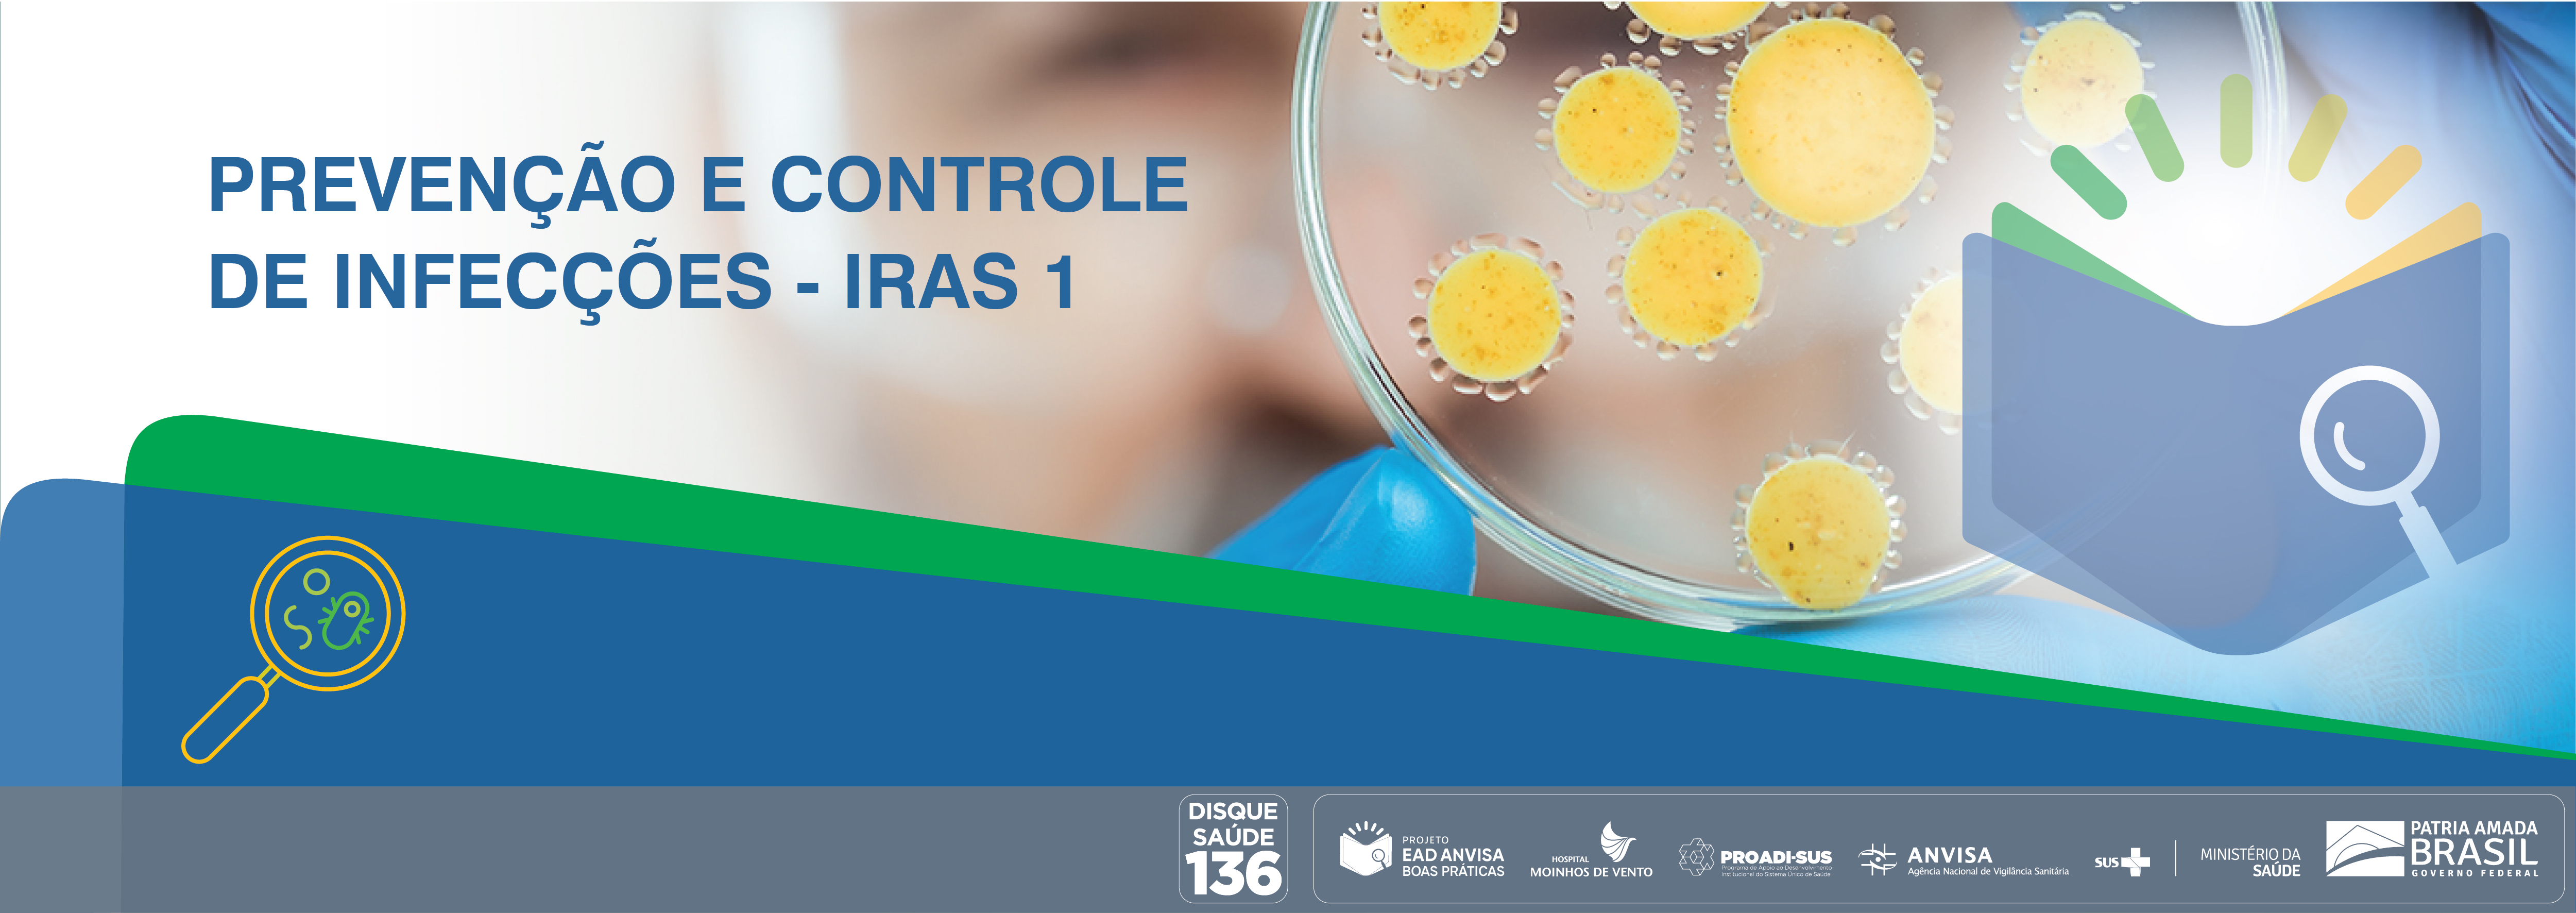 Boas Práticas de Inspeção em Serviços de Saúde com foco nas Ações de Prevenção e Controle das Infecções Relacionadas à Assistência à Saúde e Resistência Microbiana (RM) - Módulo 1 ANVISA_2020_IRAS1_V2